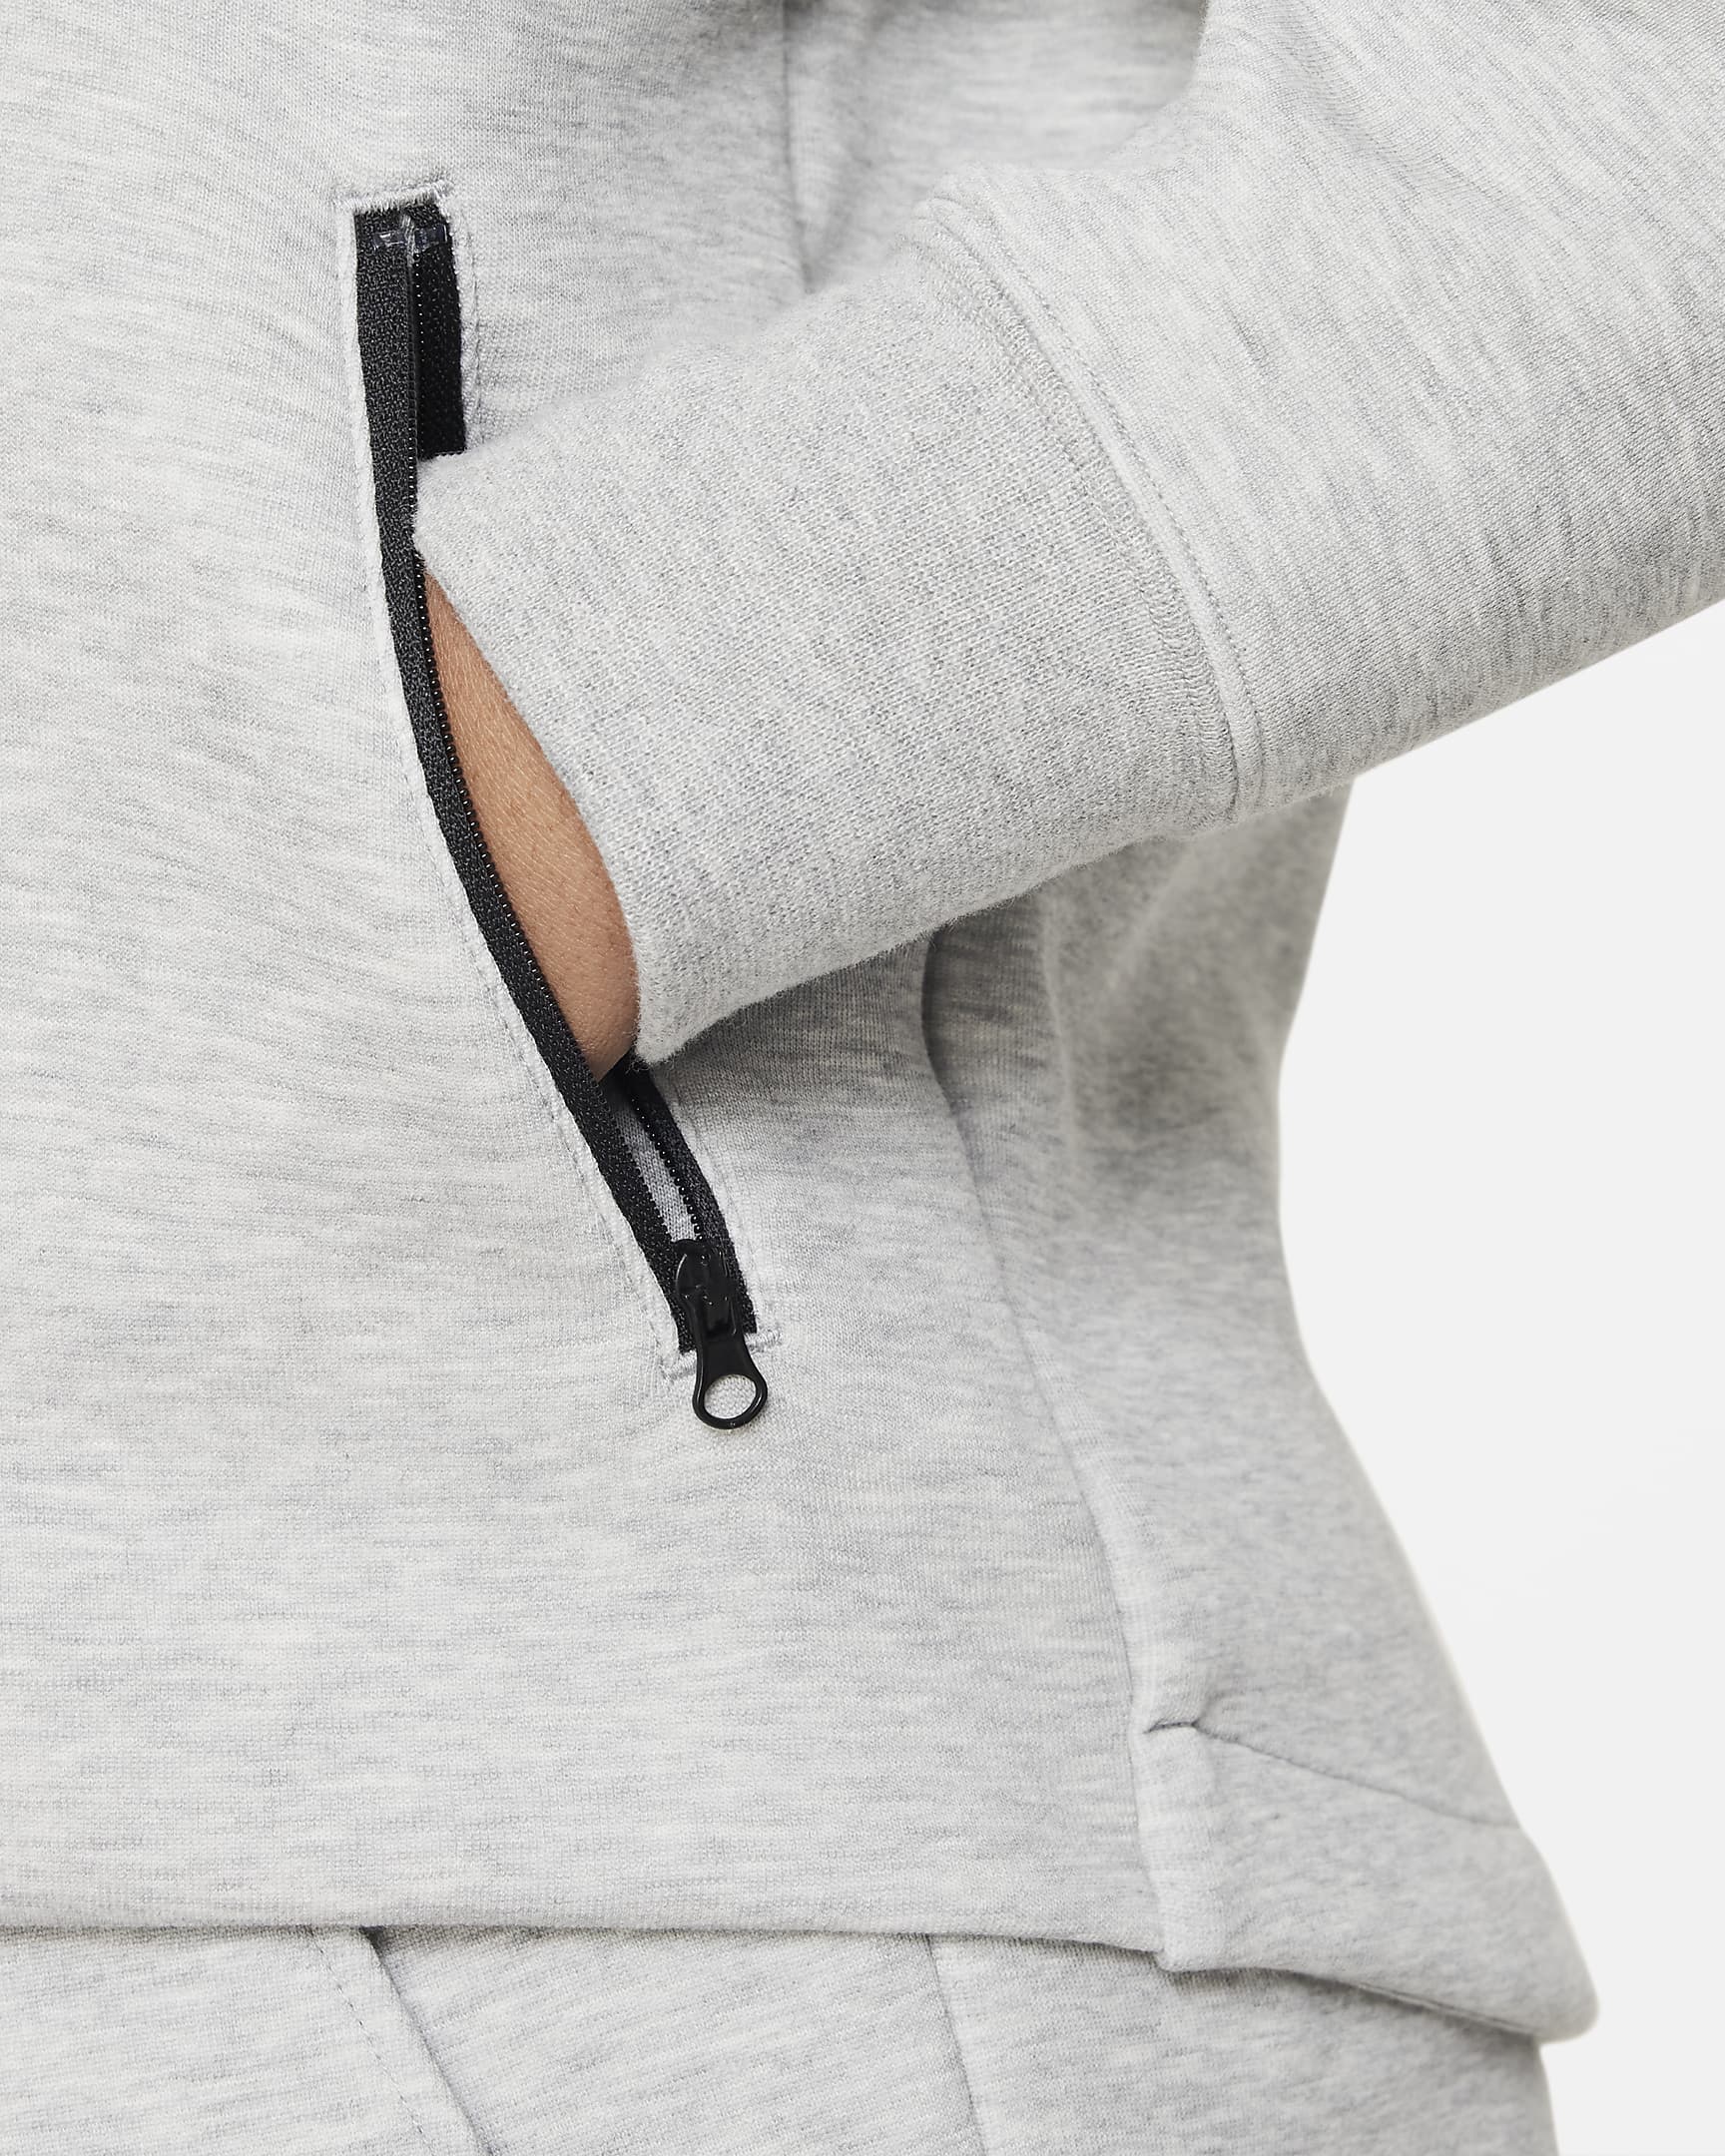 Huvtröja med hel dragkedja Nike Sportswear Tech Fleece för ungdom (tjejer) (utökade storlekar) - Dark Grey Heather/Svart/Svart